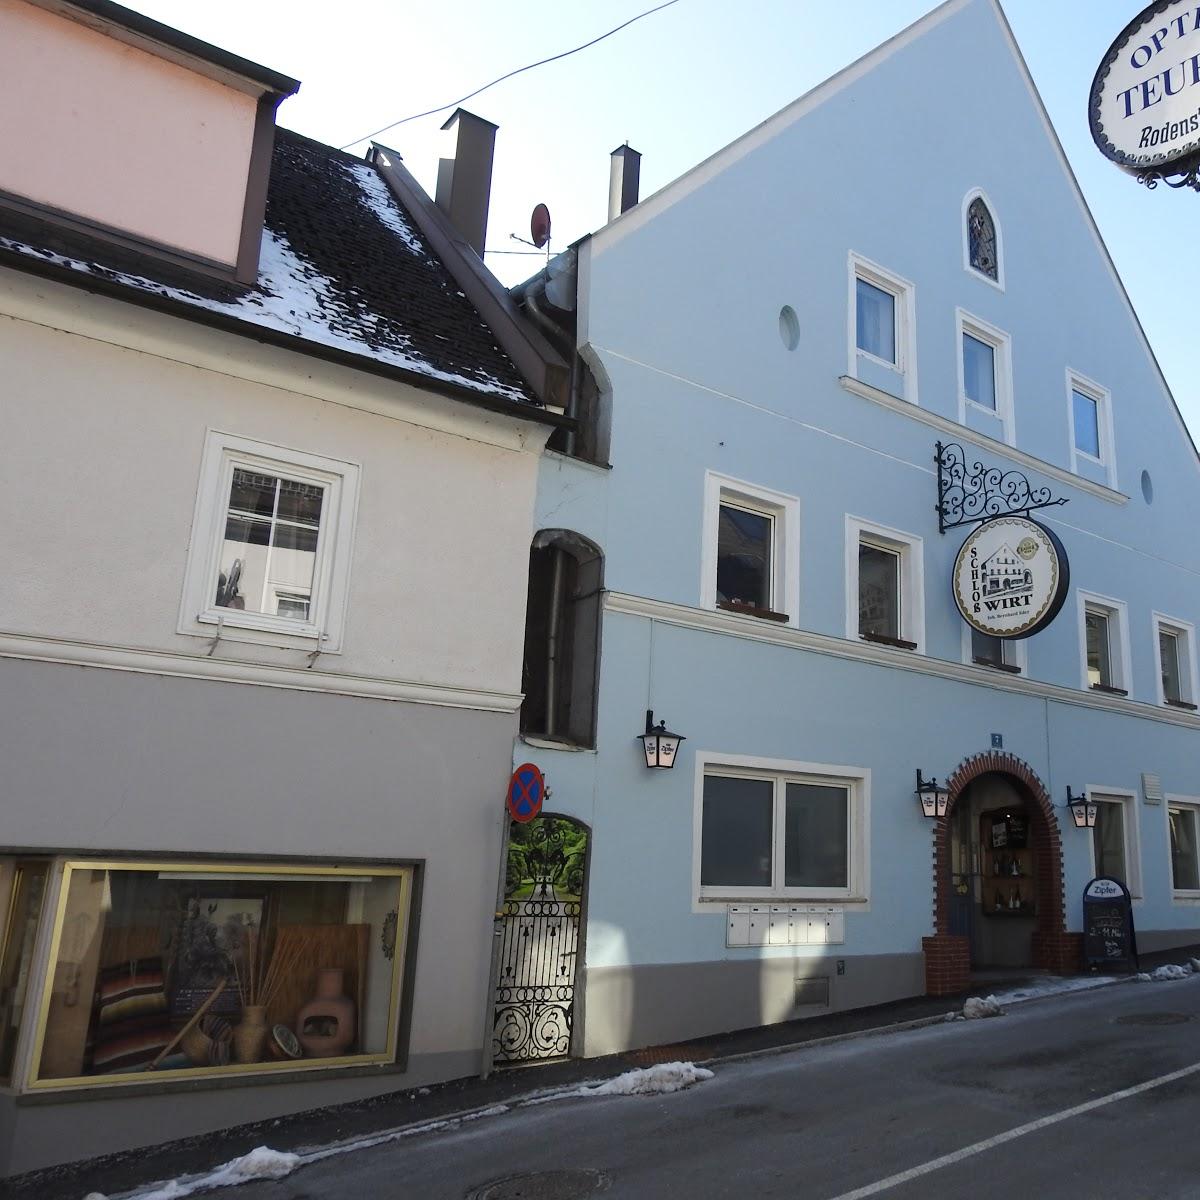 Restaurant "Gasthof Schloßwirt" in Sierning